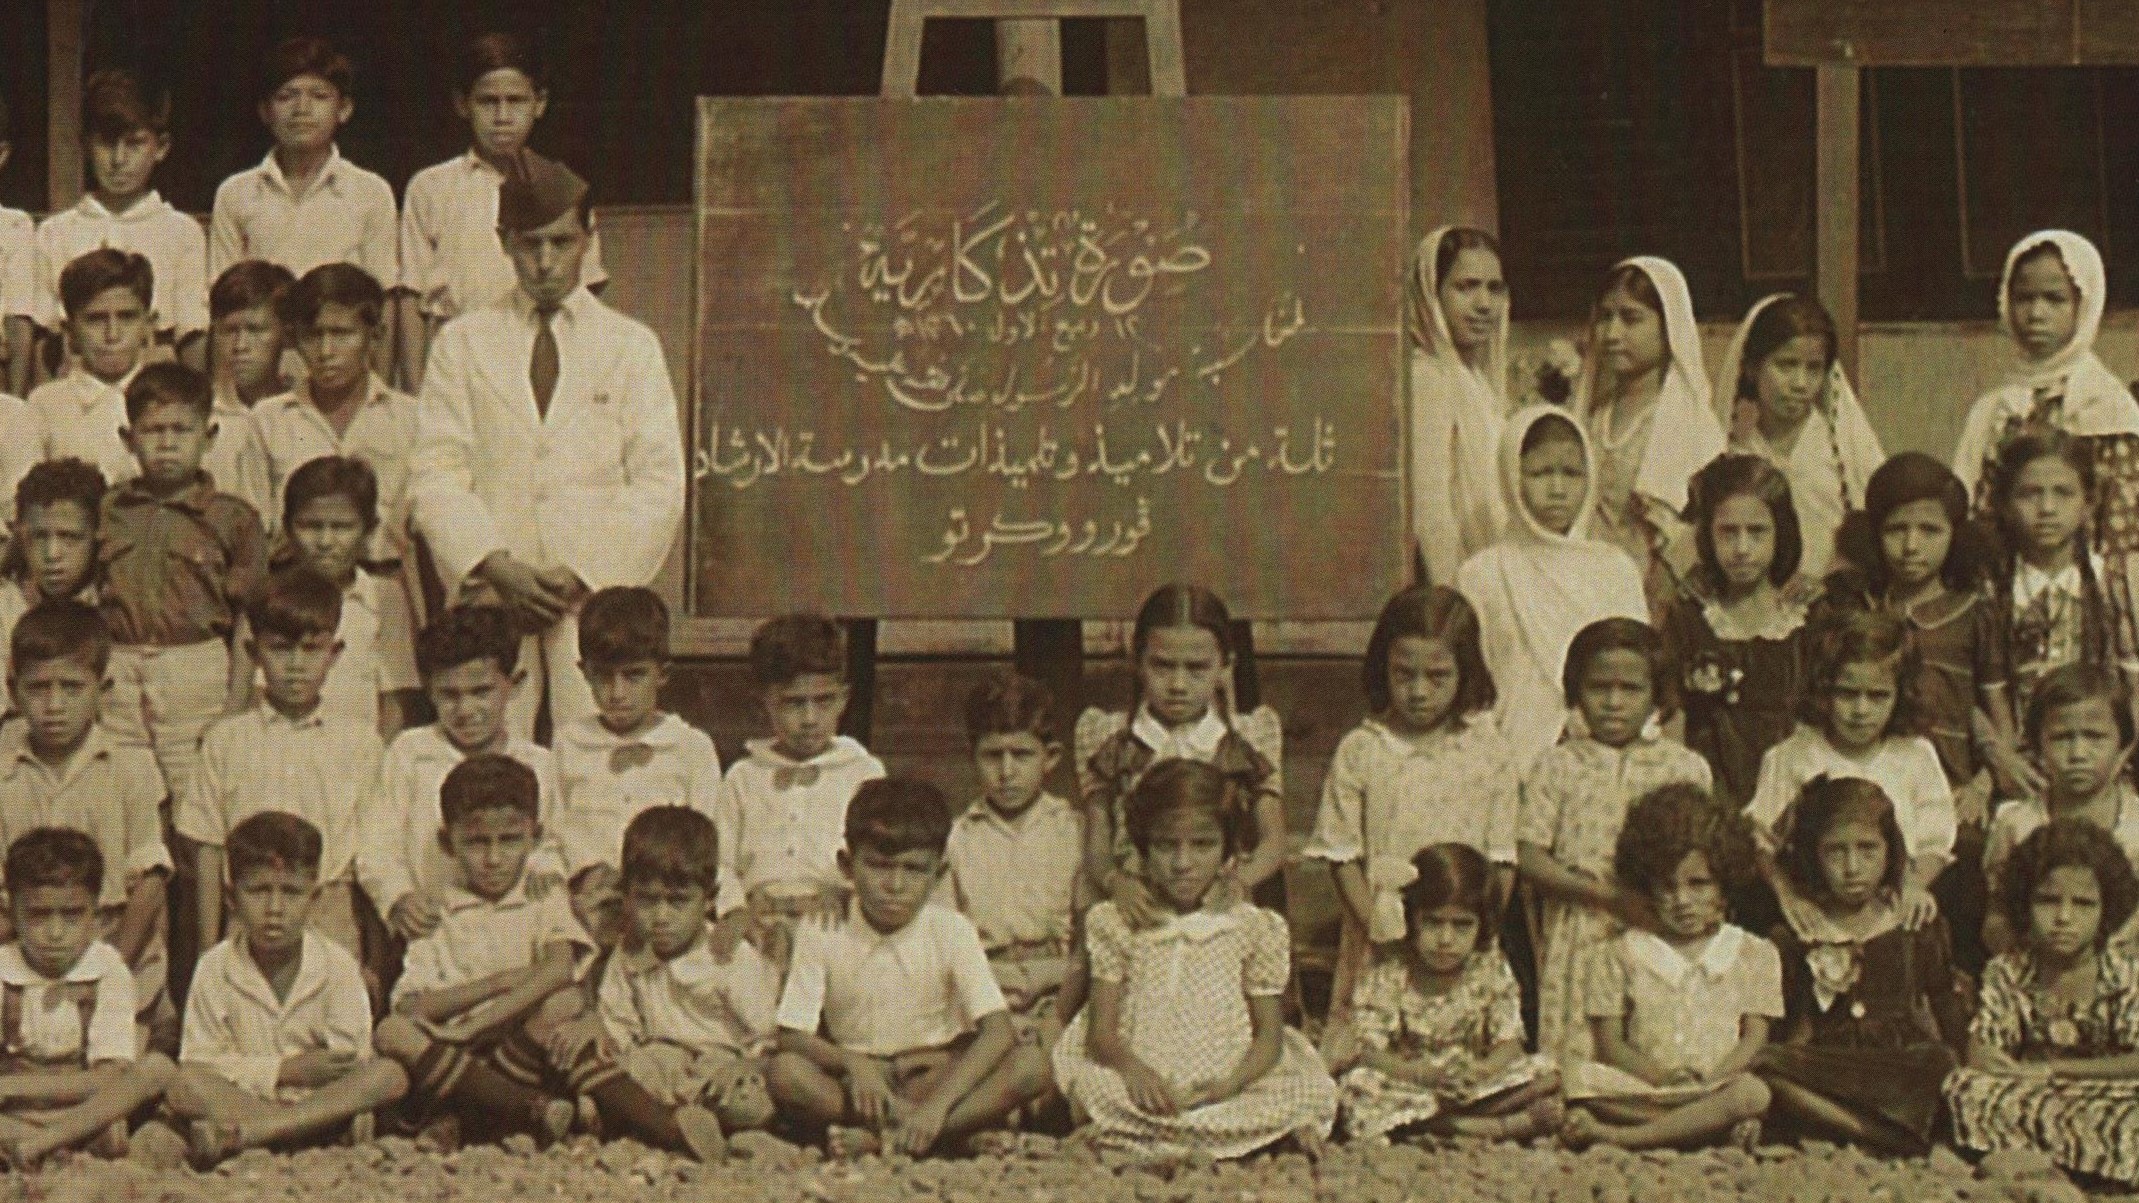 1941. Foto Bersama Para Siswa dan Guru pada 12 Rabiul Awwal 1360 Hijriyah